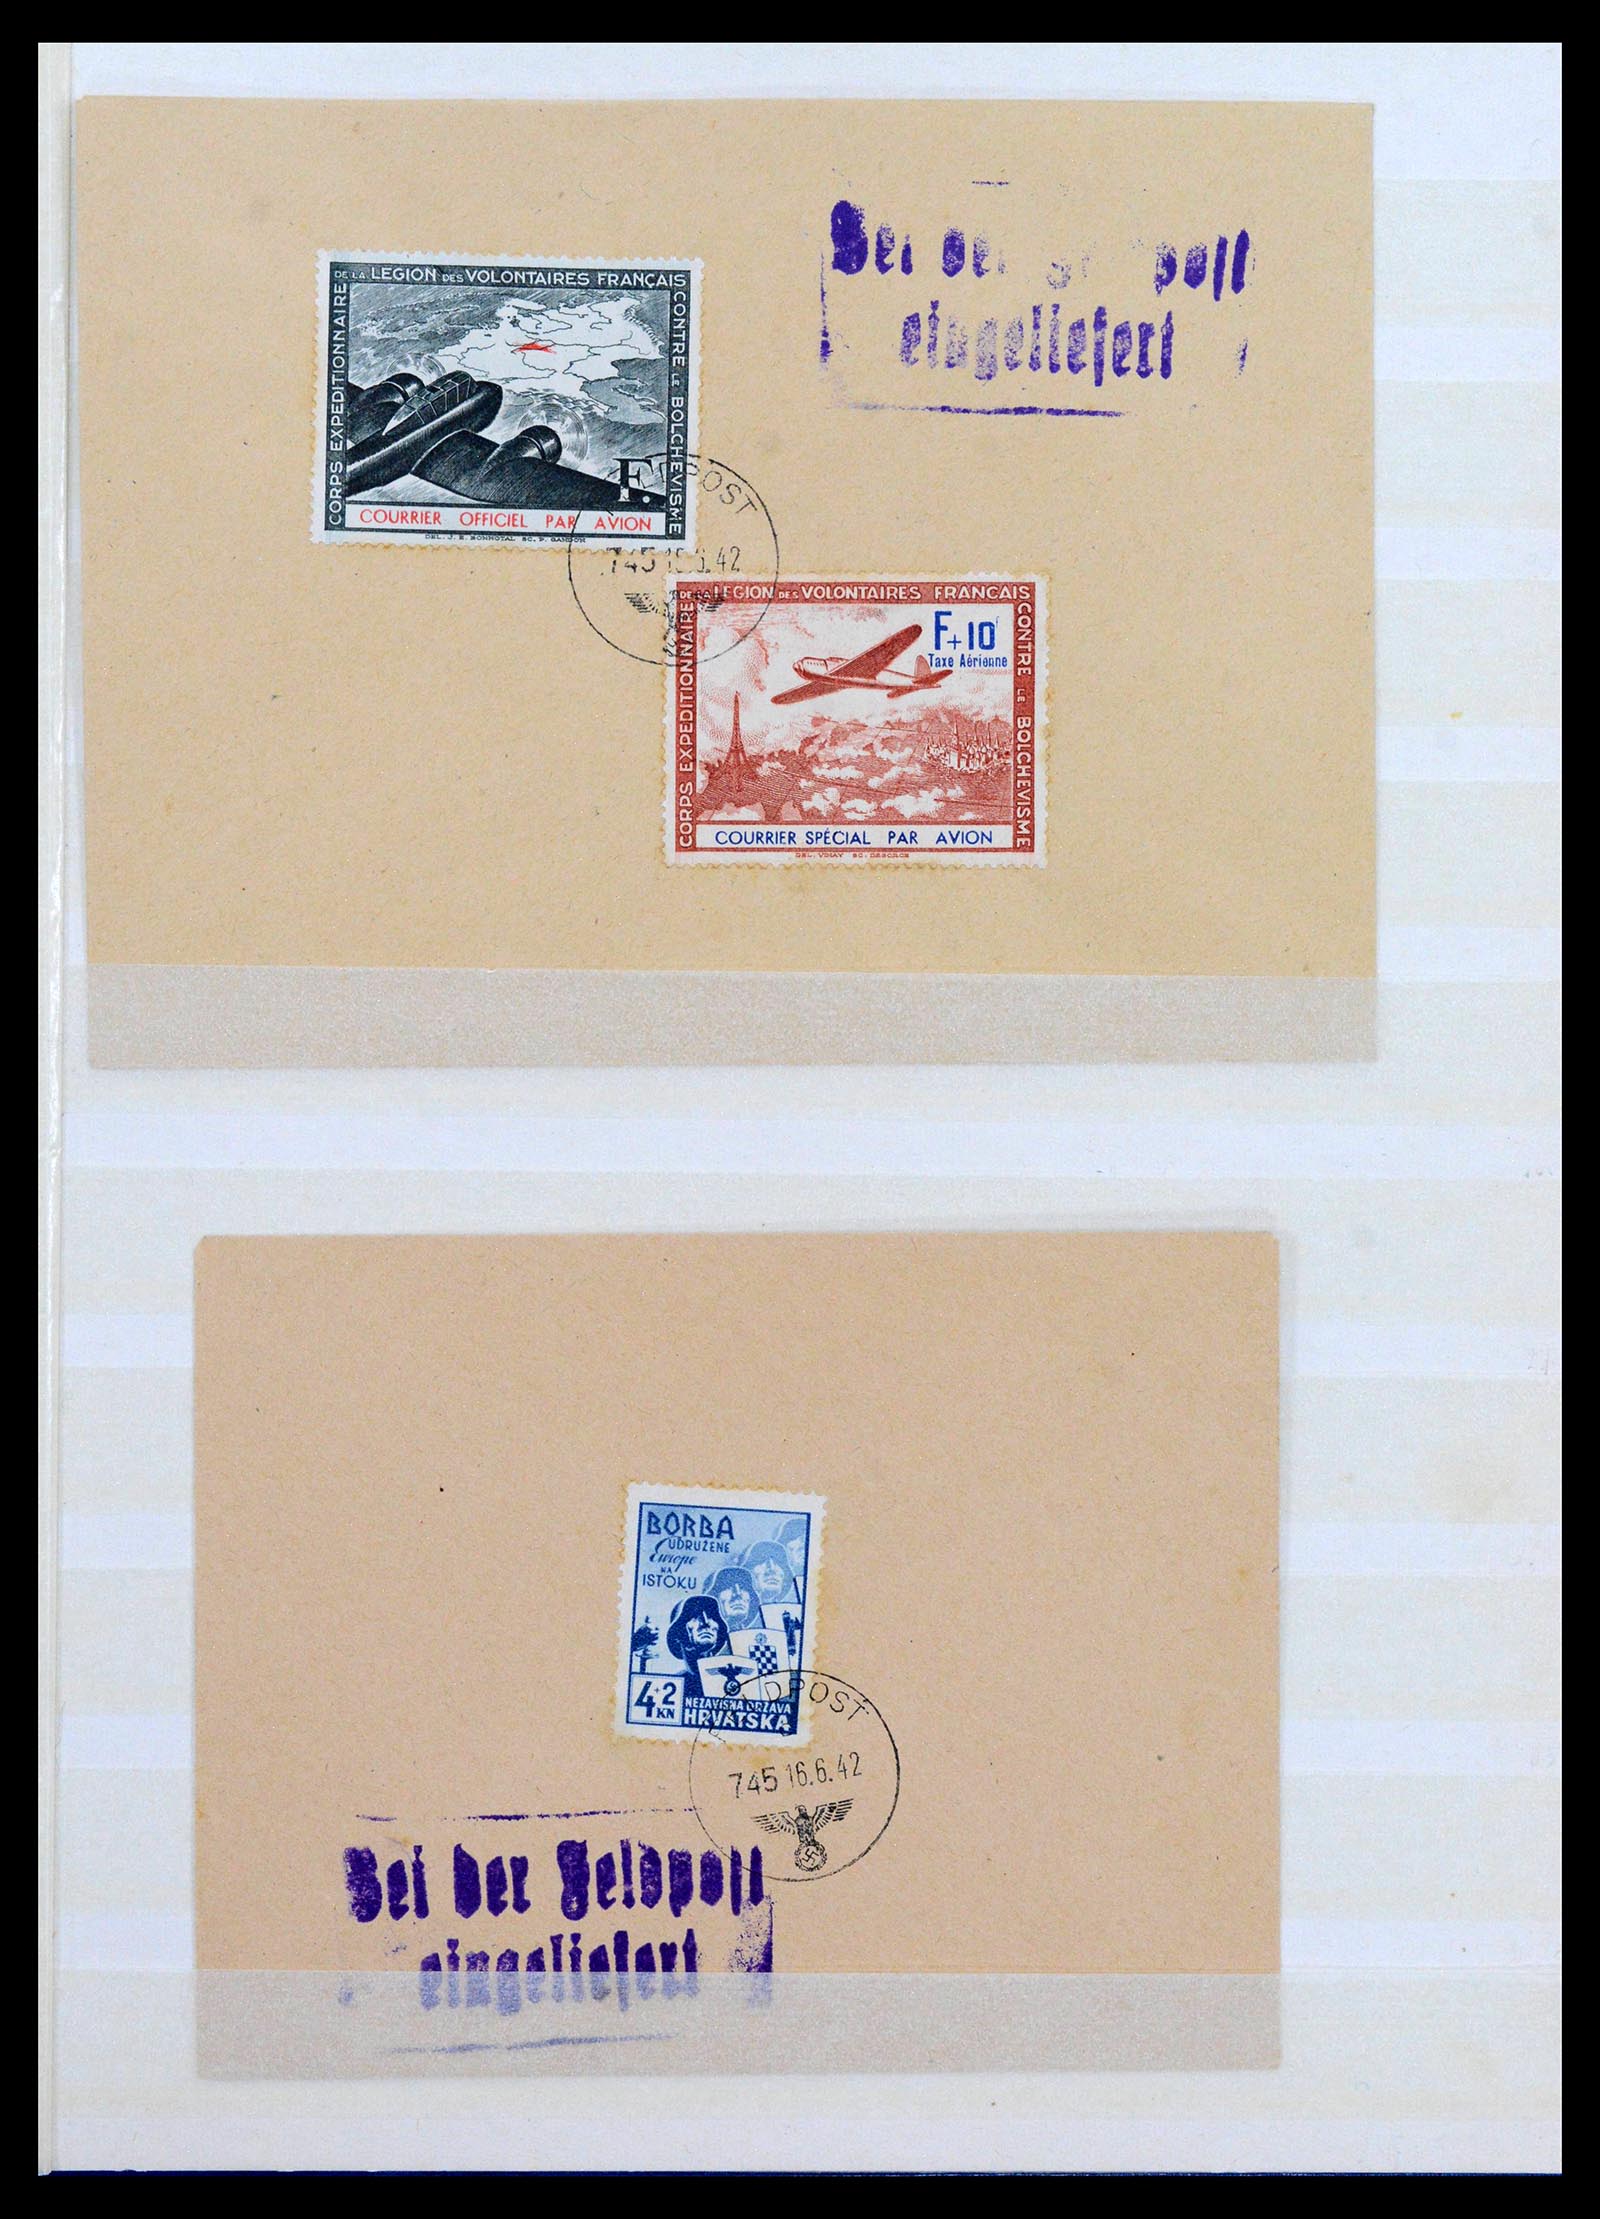 38865 0064 - Stamp collection 38865 German occupation 2nd worldwar 1939-1945.